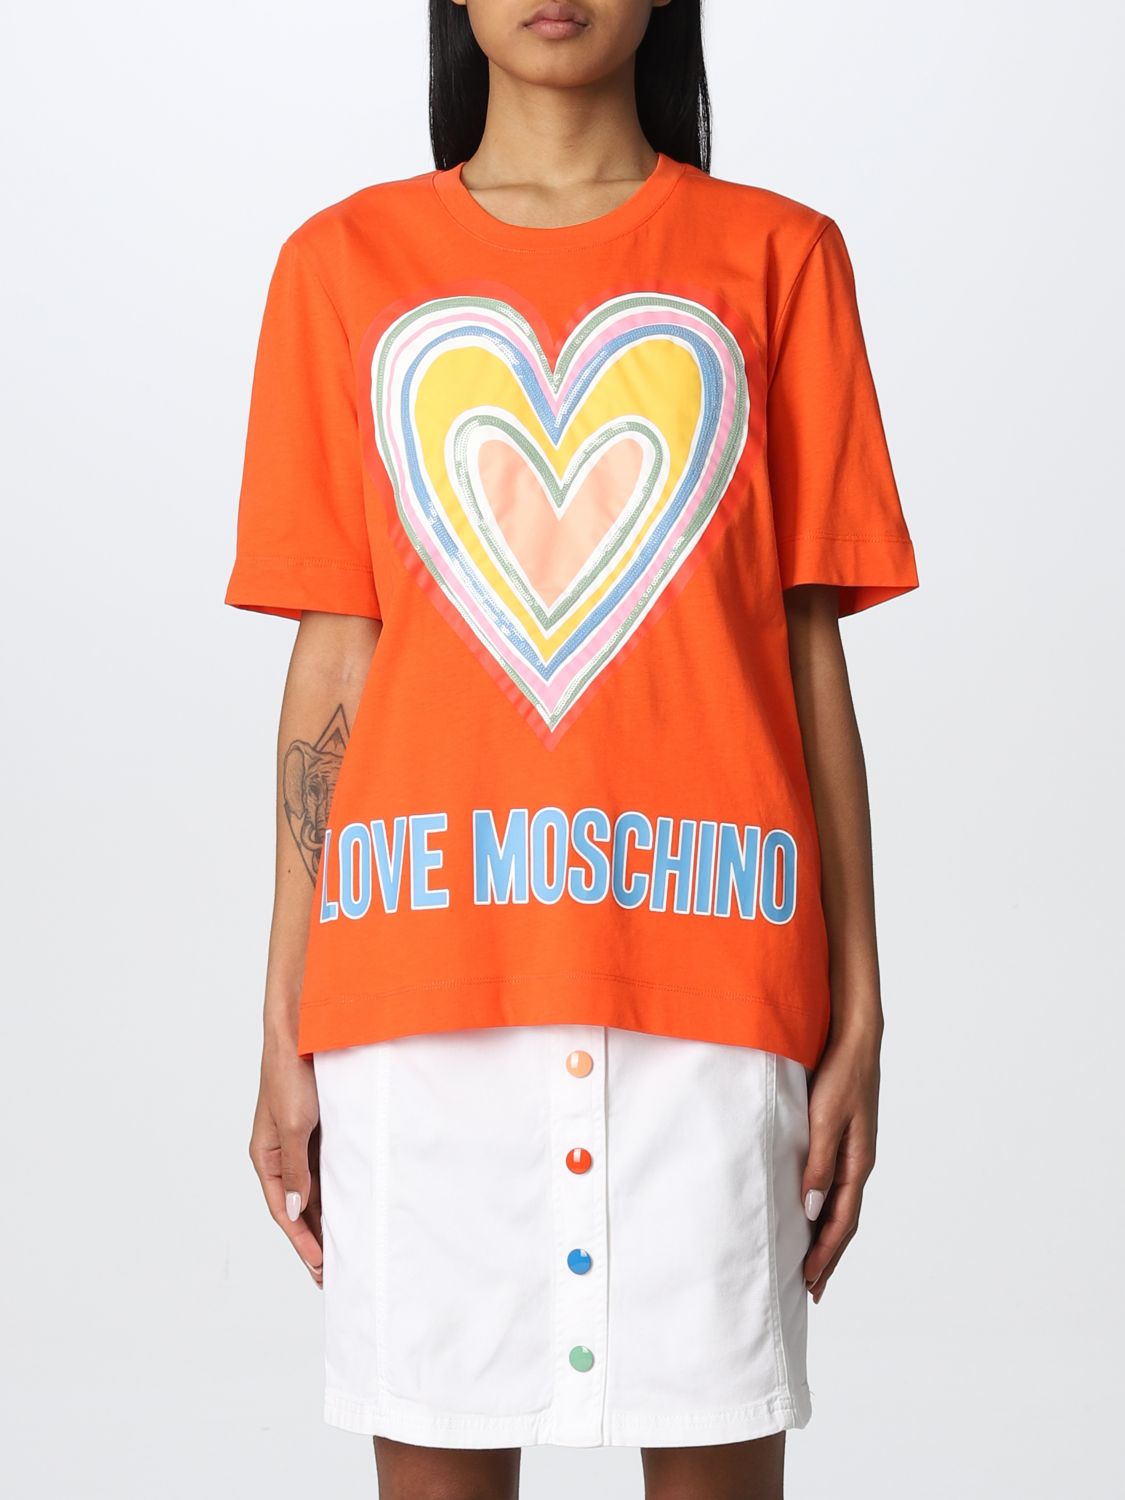 LOVE MOSCHINO: T-shirt women | T-Shirt Love Moschino Women Black | T ...